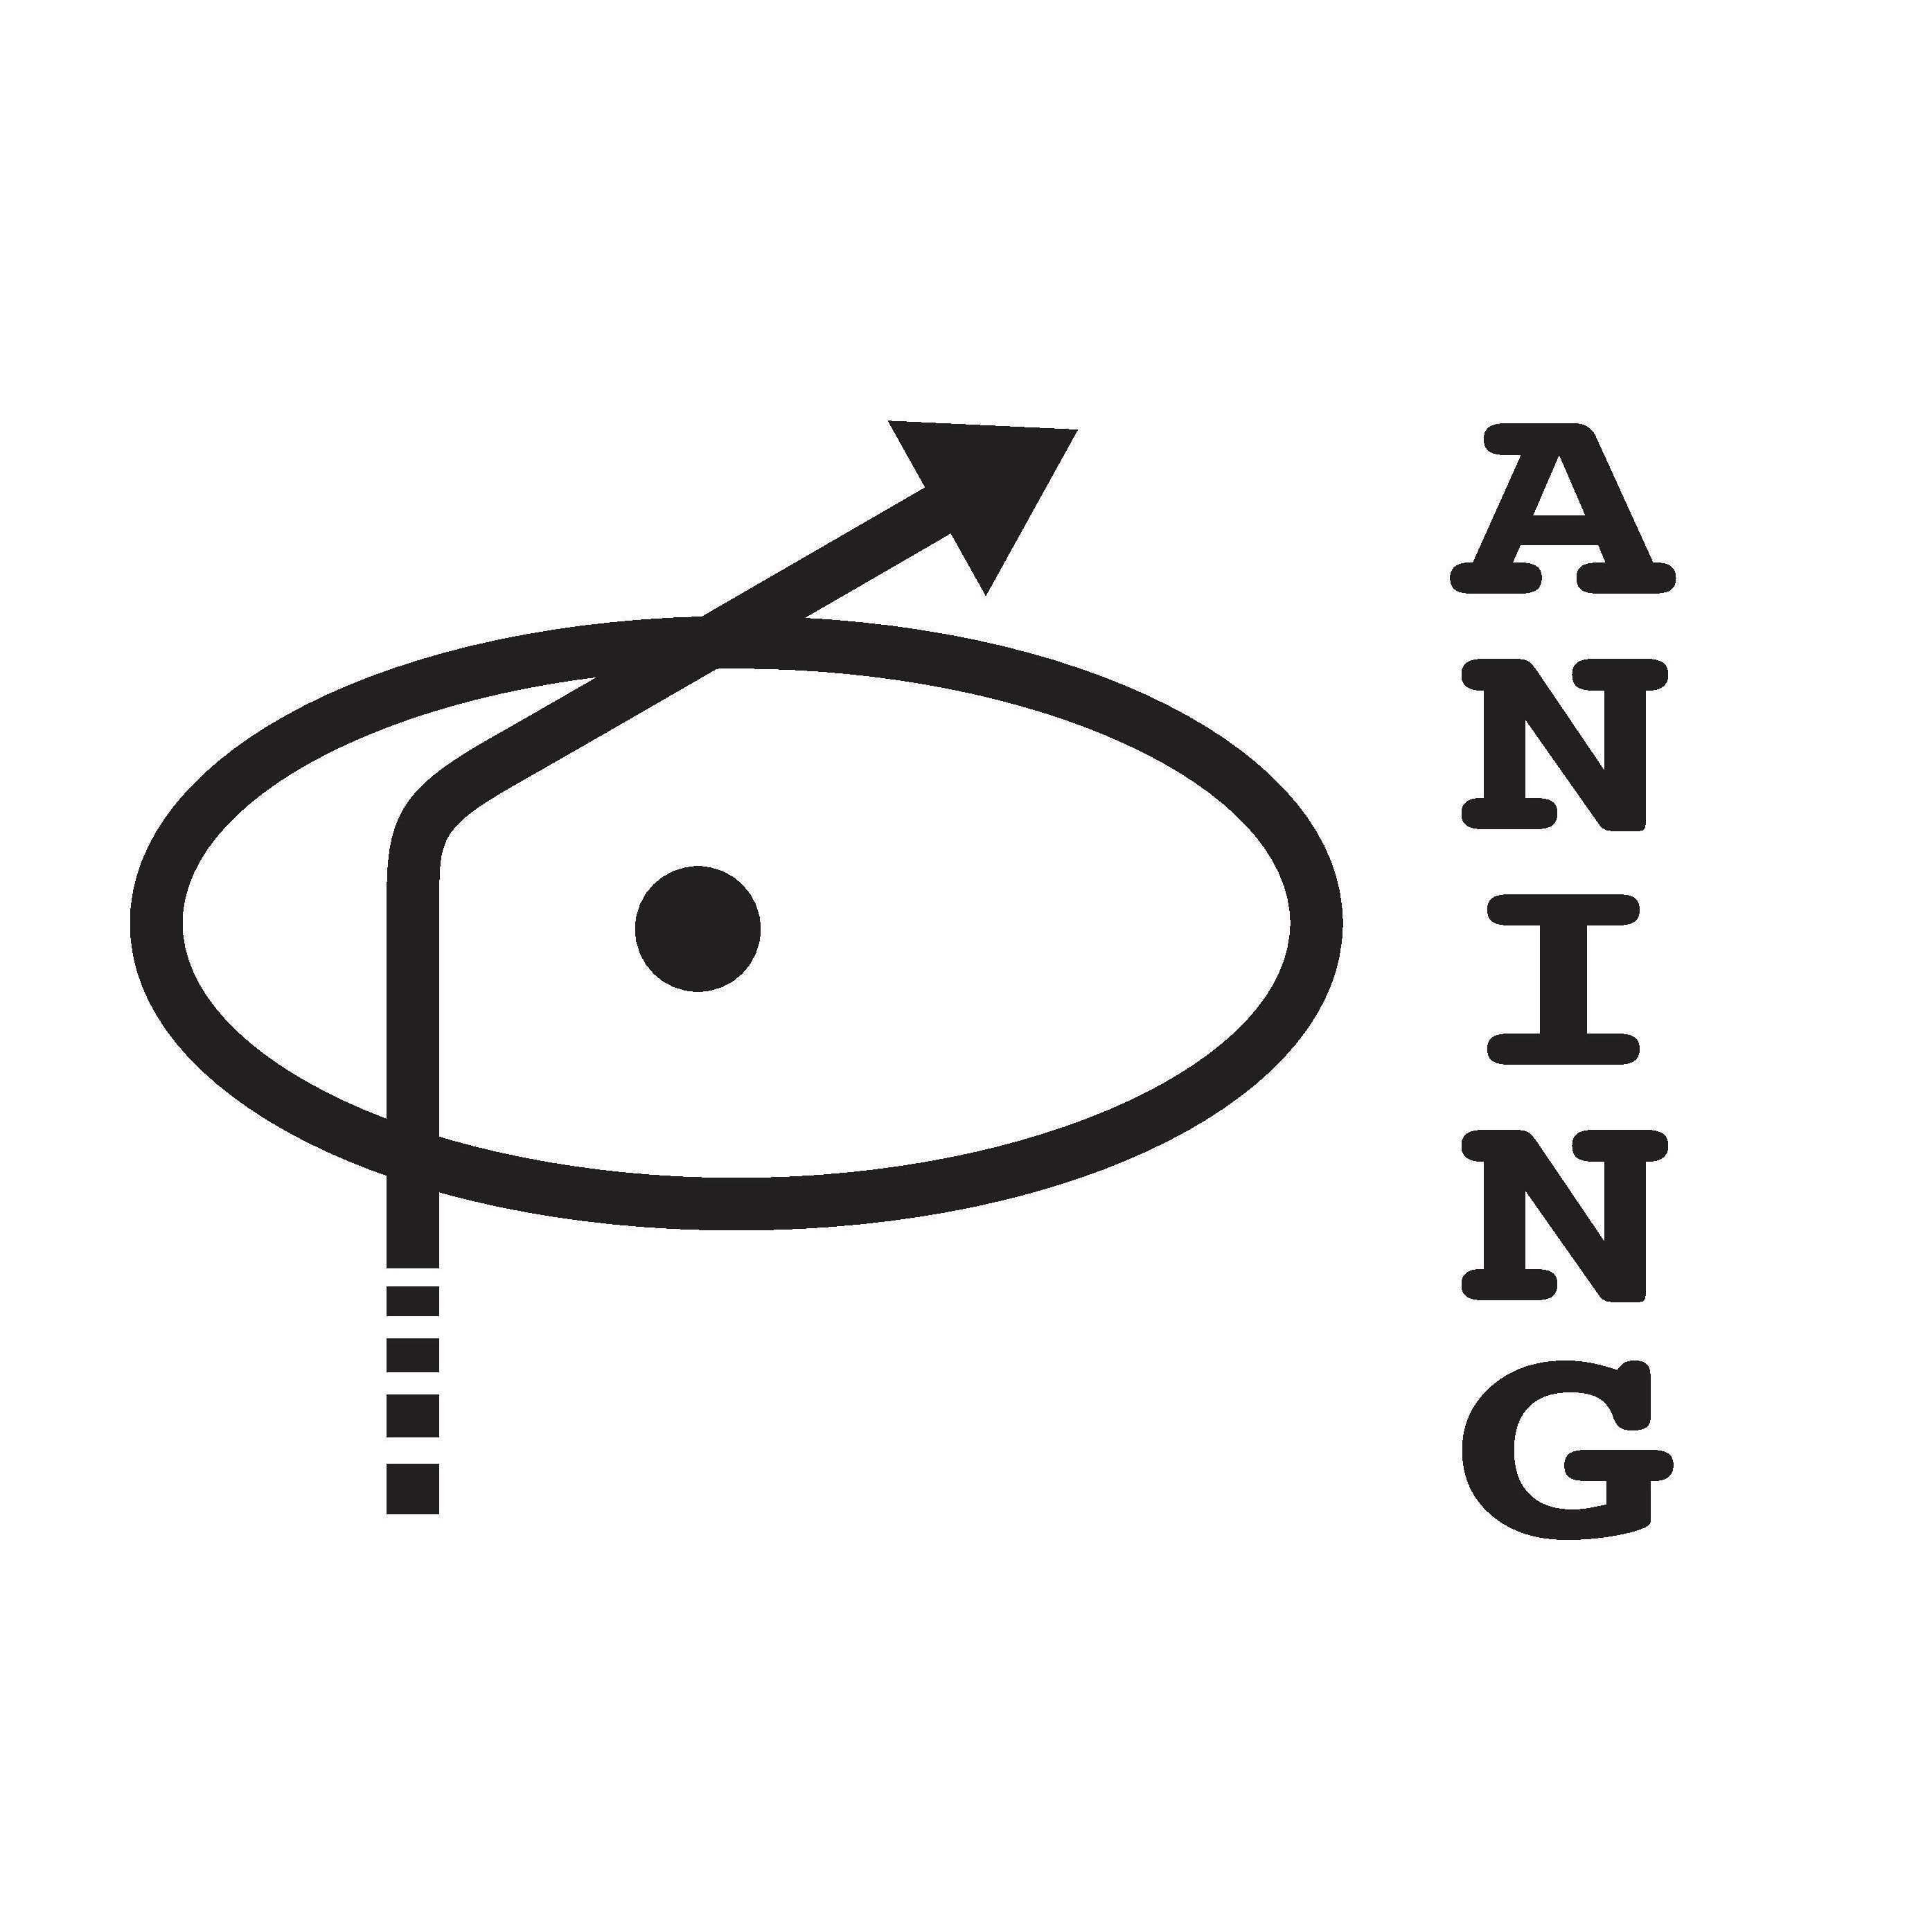 Aning - Förening för filosofi och psykoanalys